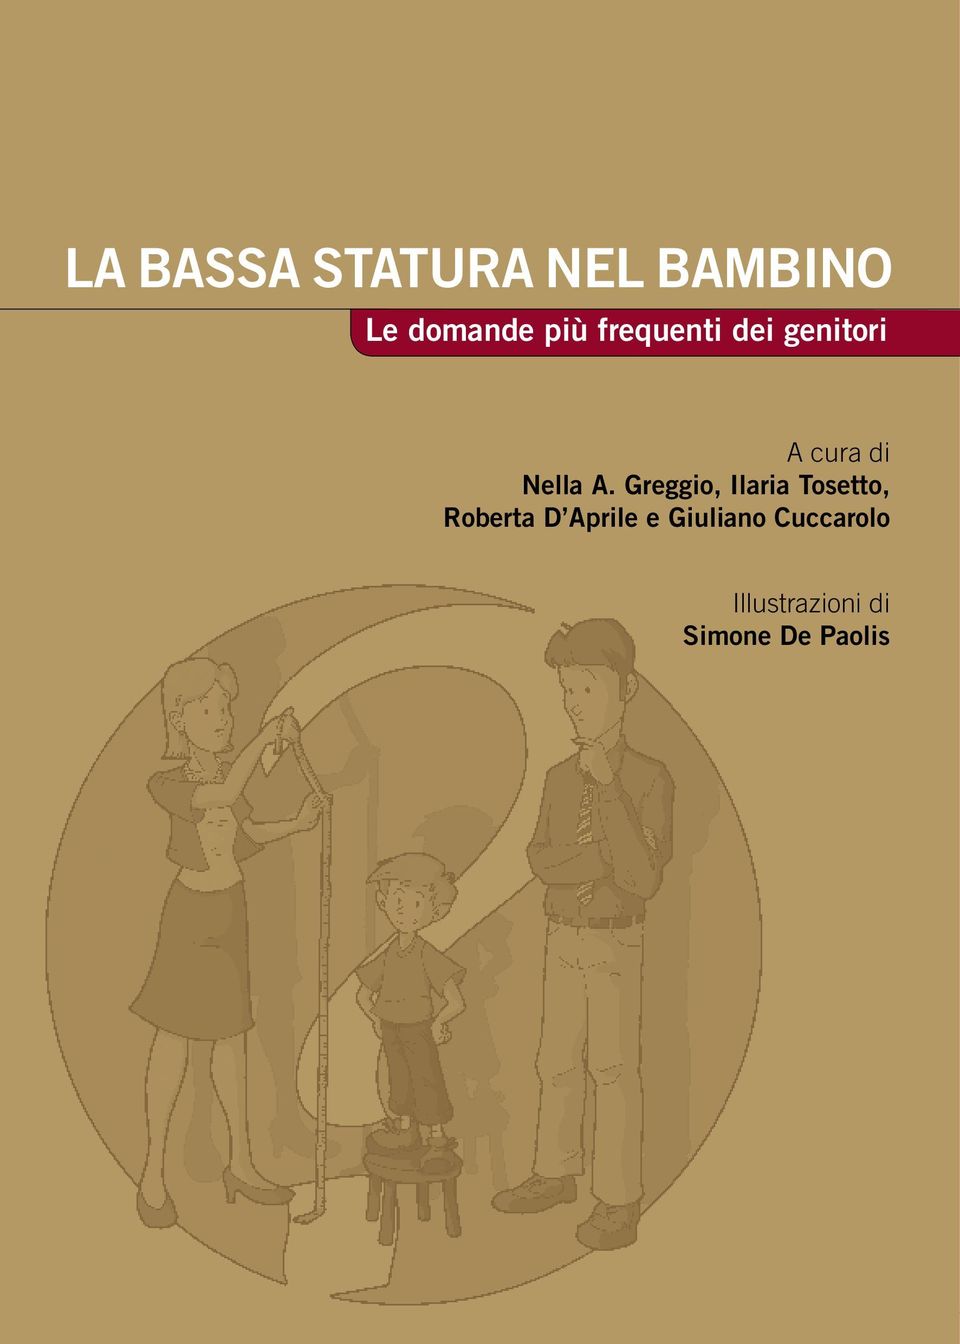 Greggio, Ilaria Tosetto, Roberta D Aprile e Giuliano